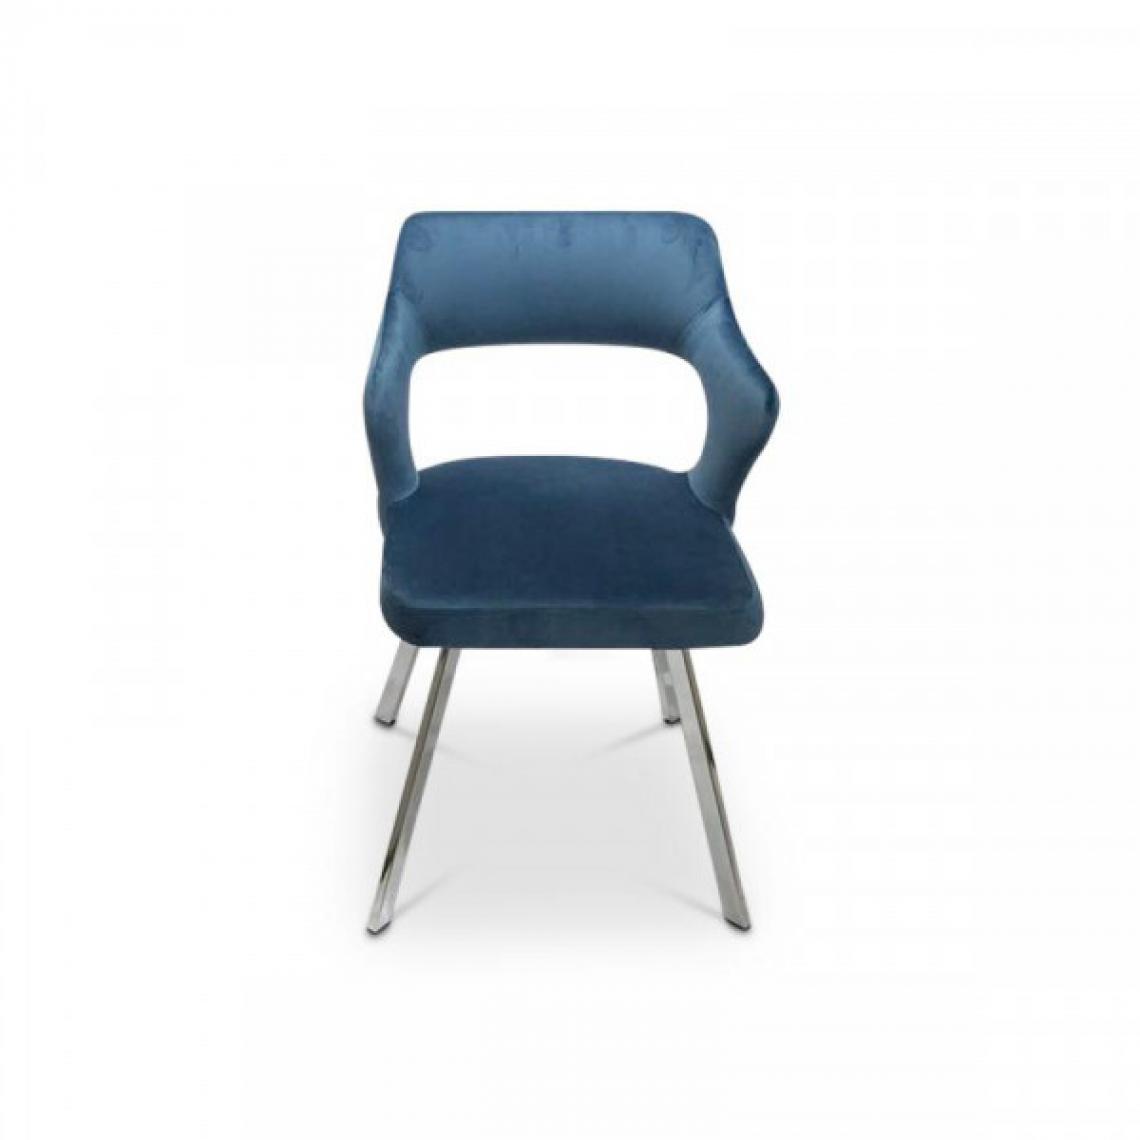 Dansmamaison - Chaise en tissu velours Bleu - WALI - L 52 x l 53 x H 76 cm - Chaises